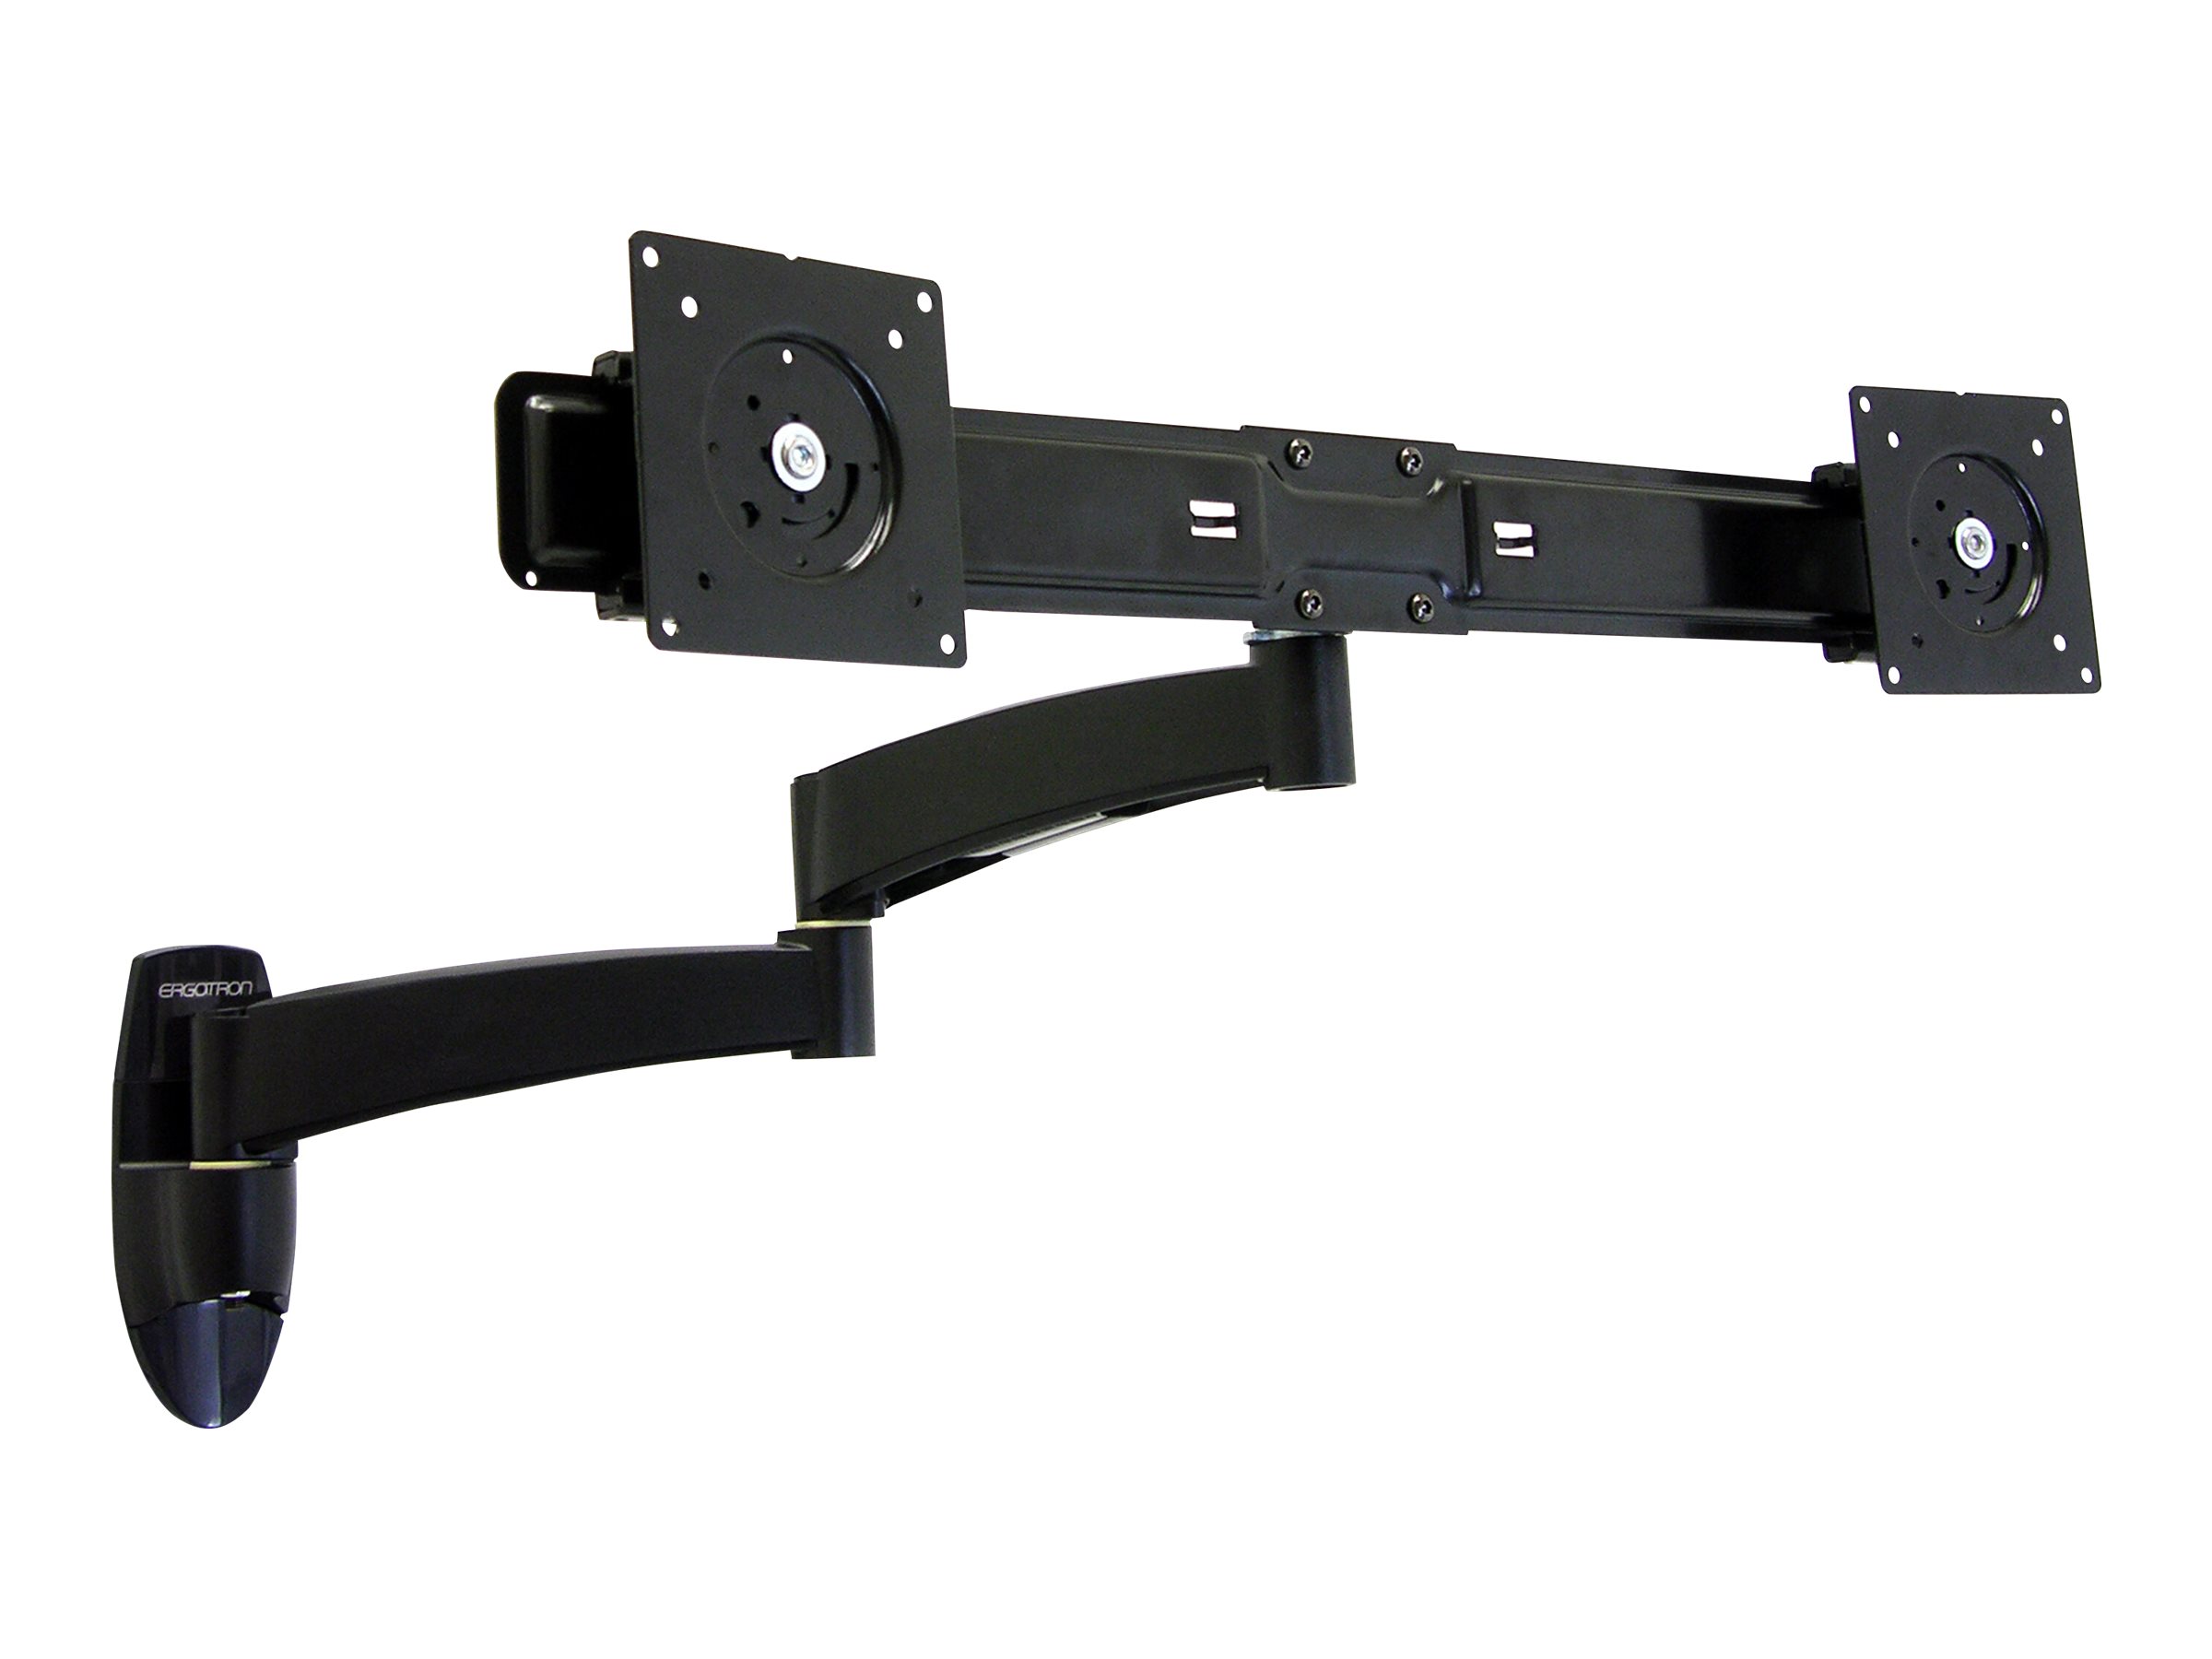 Ergotron 200 Series - Kit de montage (fixation murale, double bras articulé, barre transversale, 2 adaptateurs VESA, 2 rallonges) - bras réglable - pour 2 écrans LCD - acier - noir - Taille d'écran : Jusqu'à 22 pouces - montable sur mur - 45-231-200 - Accessoires pour écran